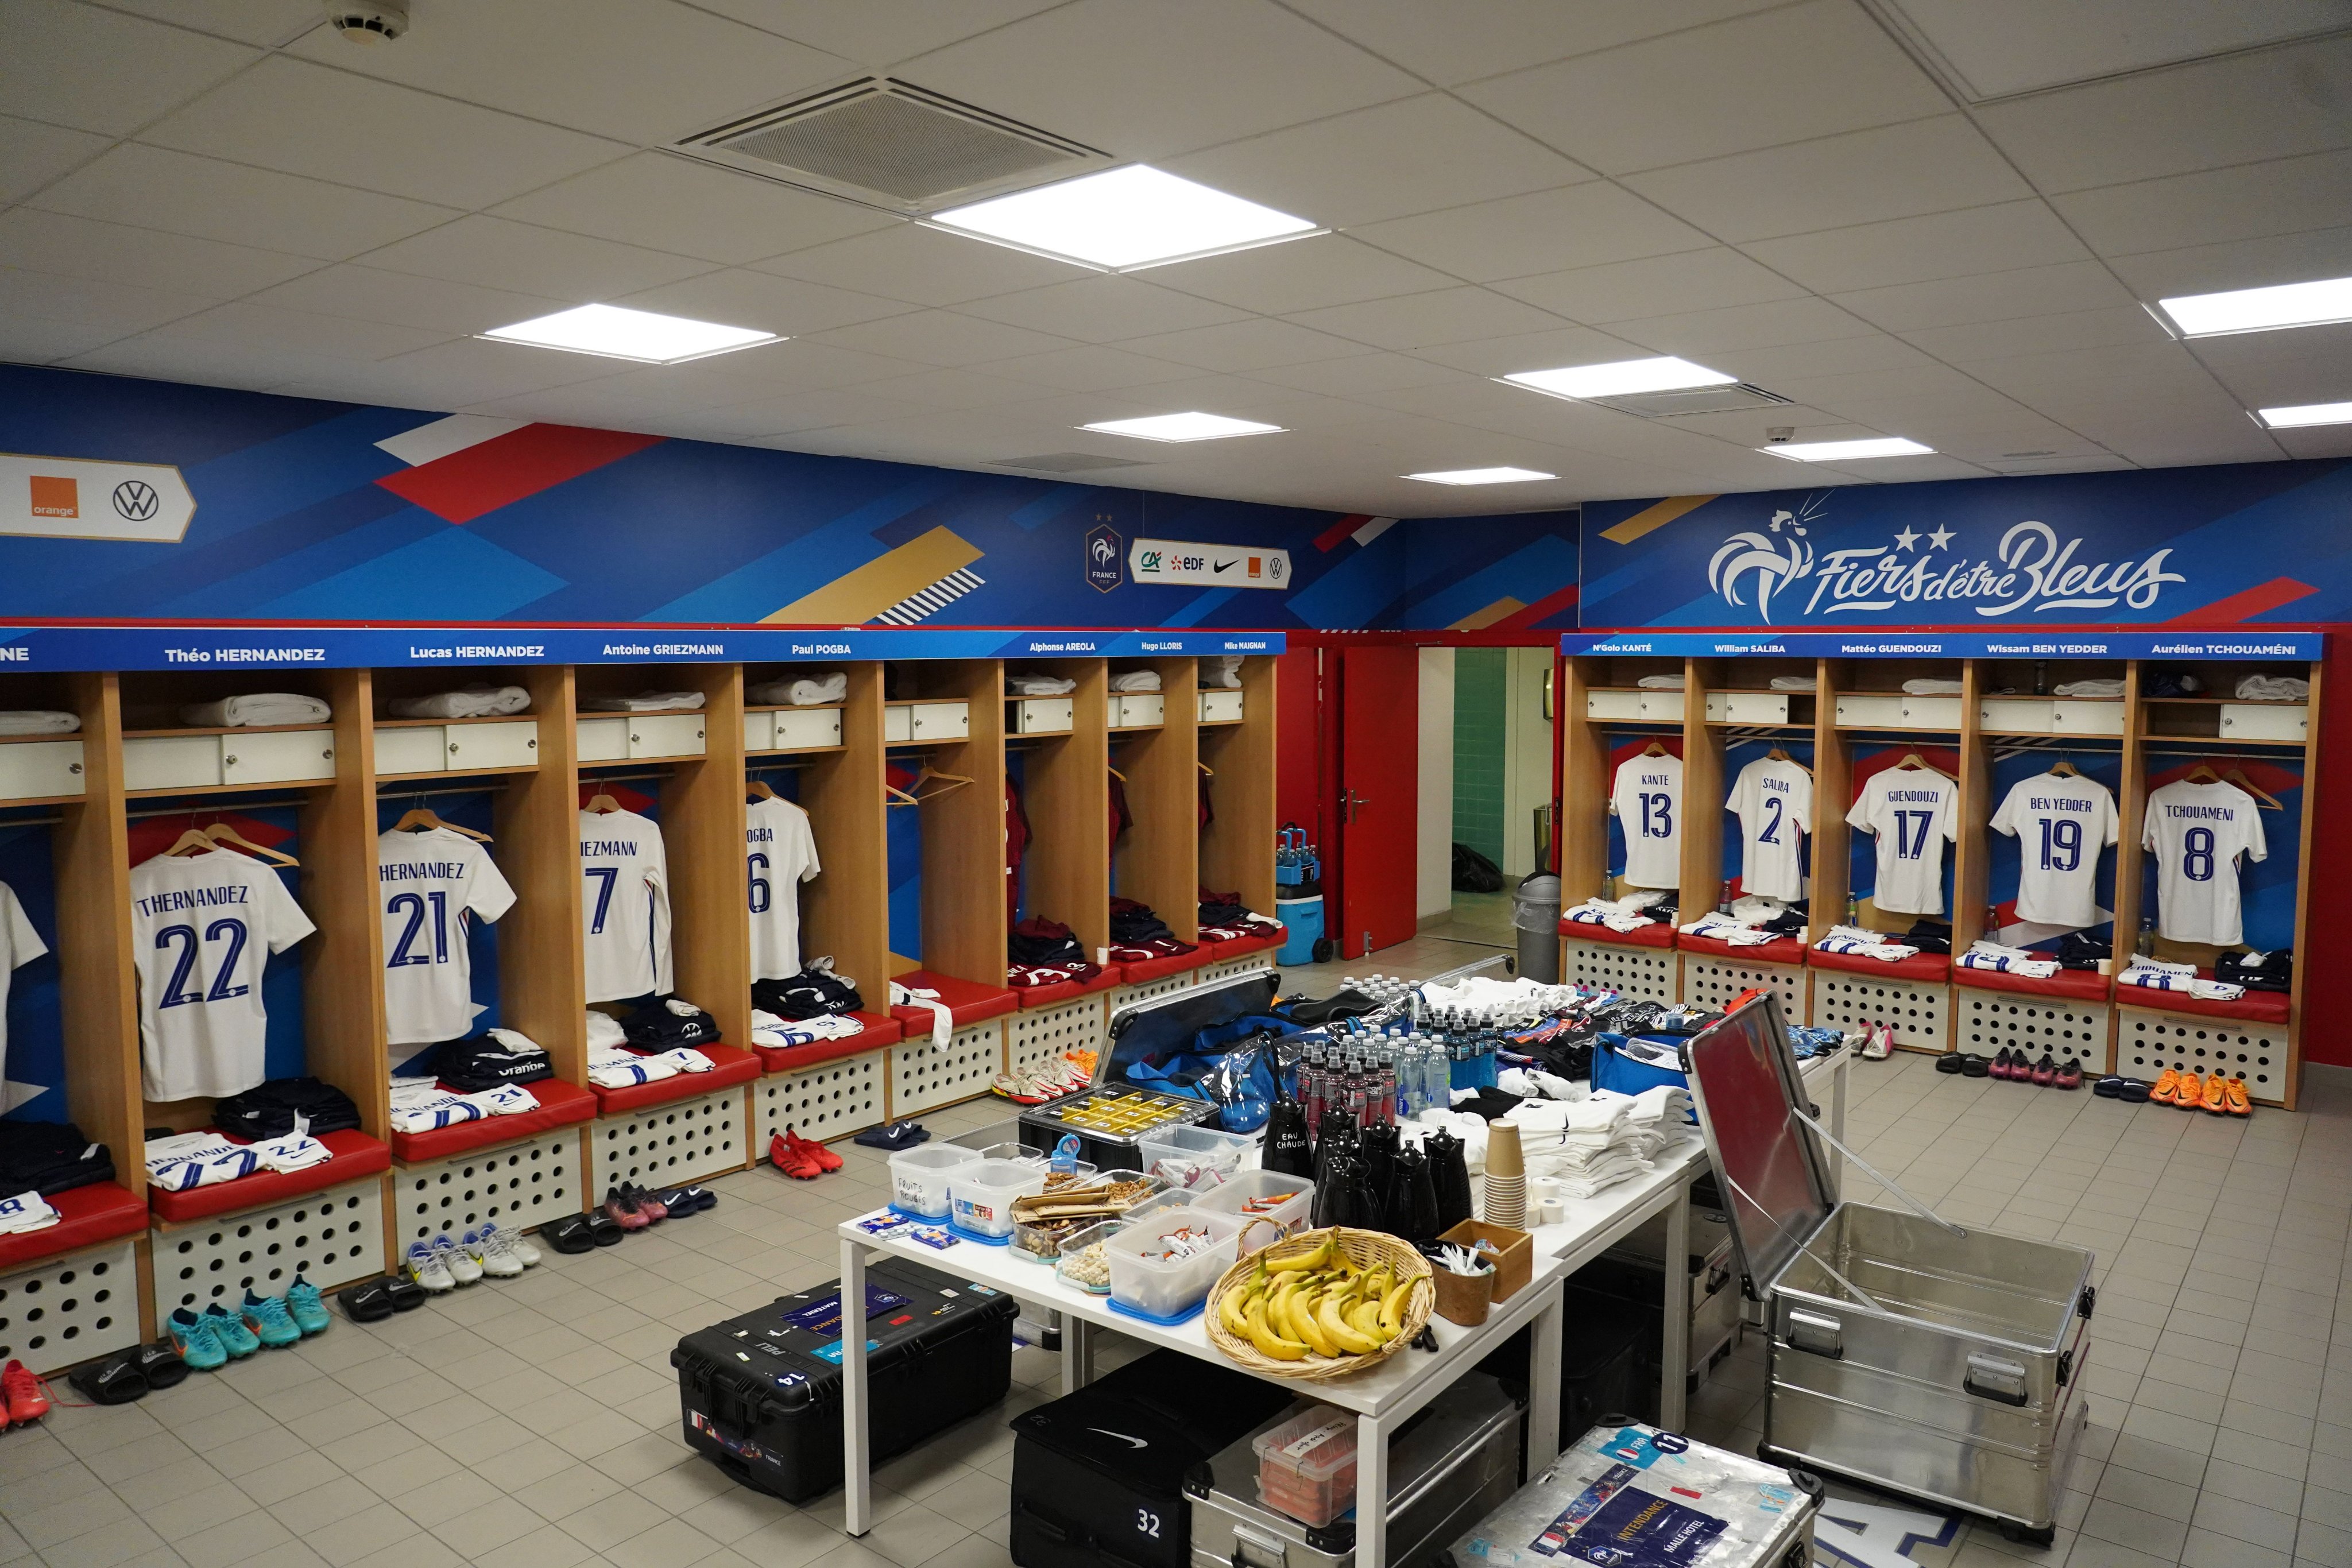 Equipe de France on Twitter: "Le vestiaire du 𝑺𝒕𝒂𝒅𝒆 𝑷𝒊𝒆𝒓𝒓𝒆 𝑴𝒂𝒖𝒓𝒐𝒚 est prêt à accueillir nos Bleus 🔥 #FRAAFS #FiersdetreBleus https://t.co/hphuG94fyL" / Twitter